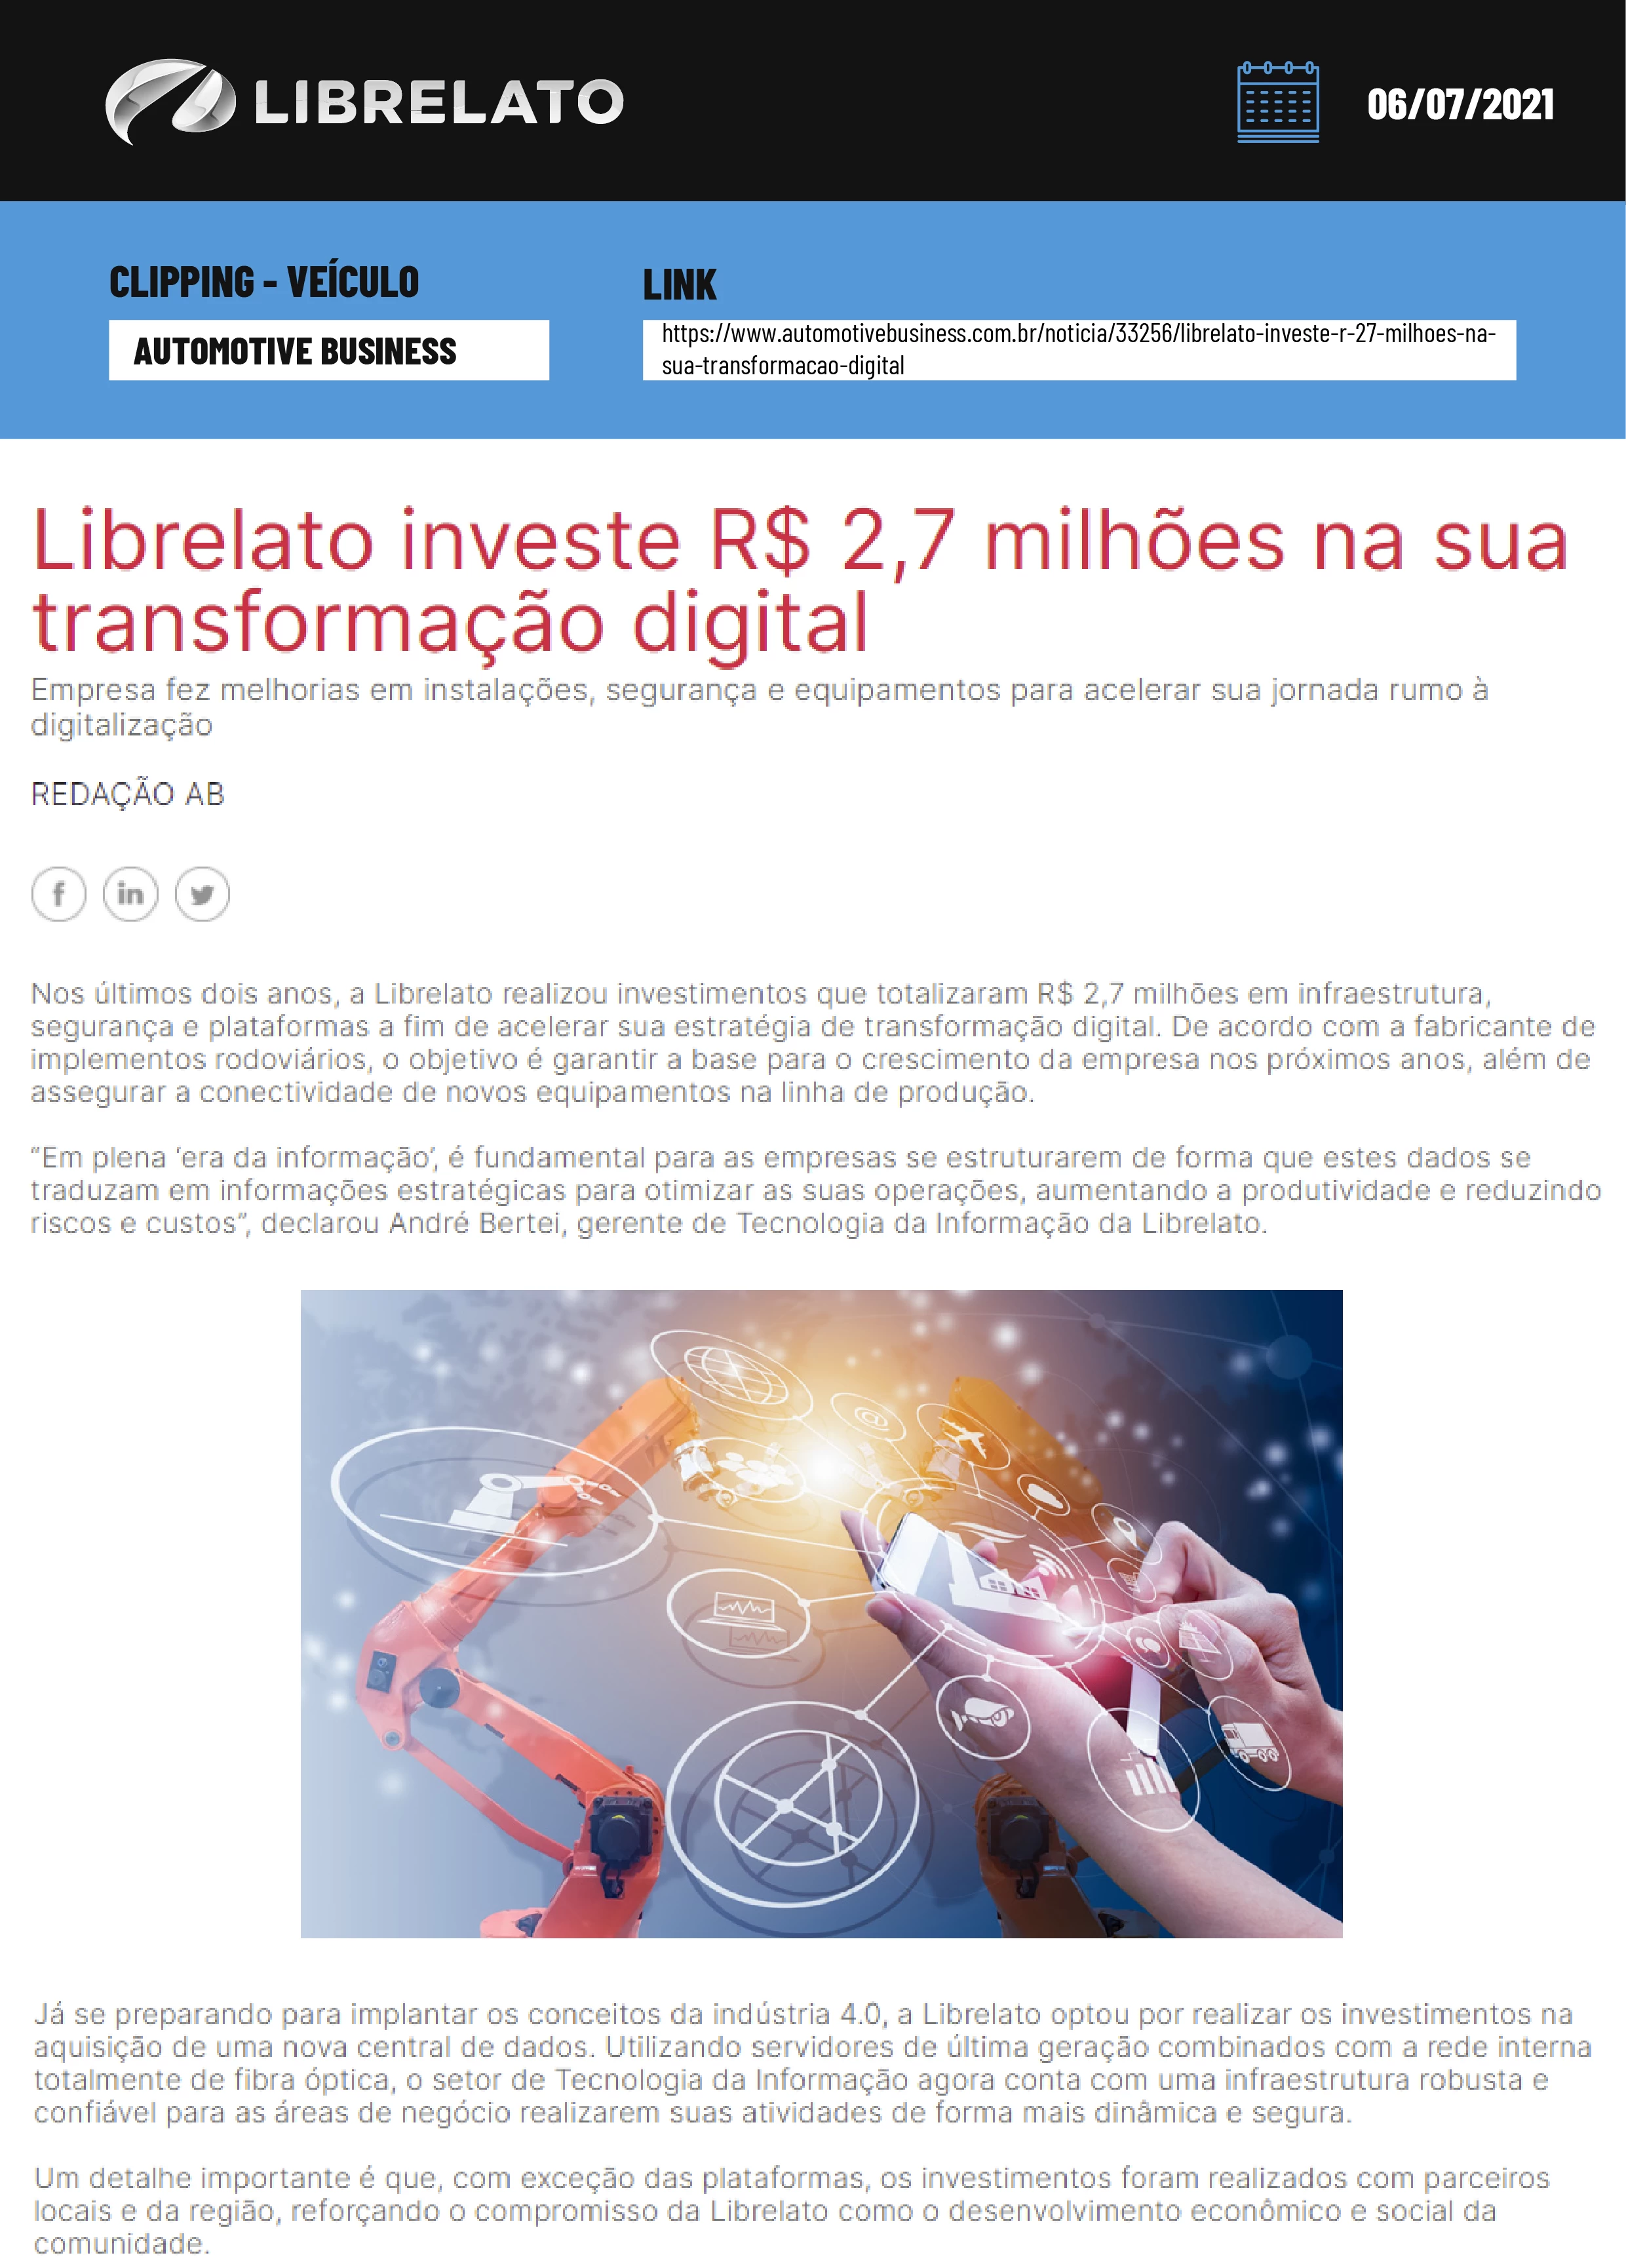 Librelato investe R$ 2,7 milhões na sua transformação digital